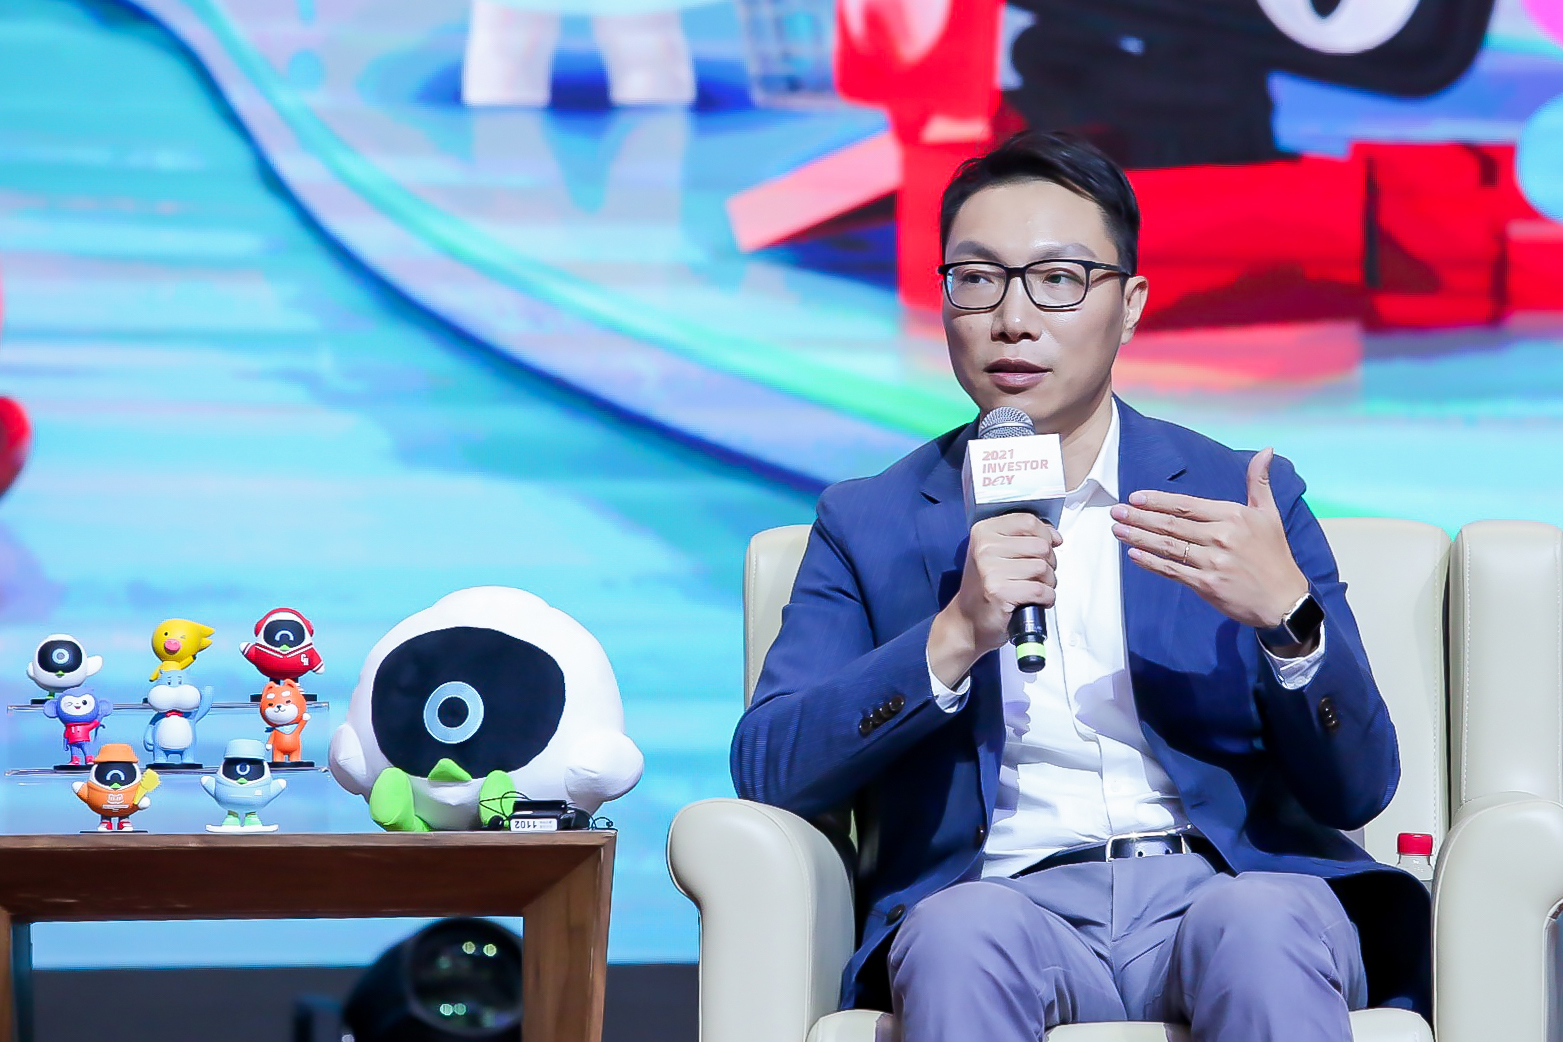 Qualidade mascote sônico para entretenimento - Alibaba.com